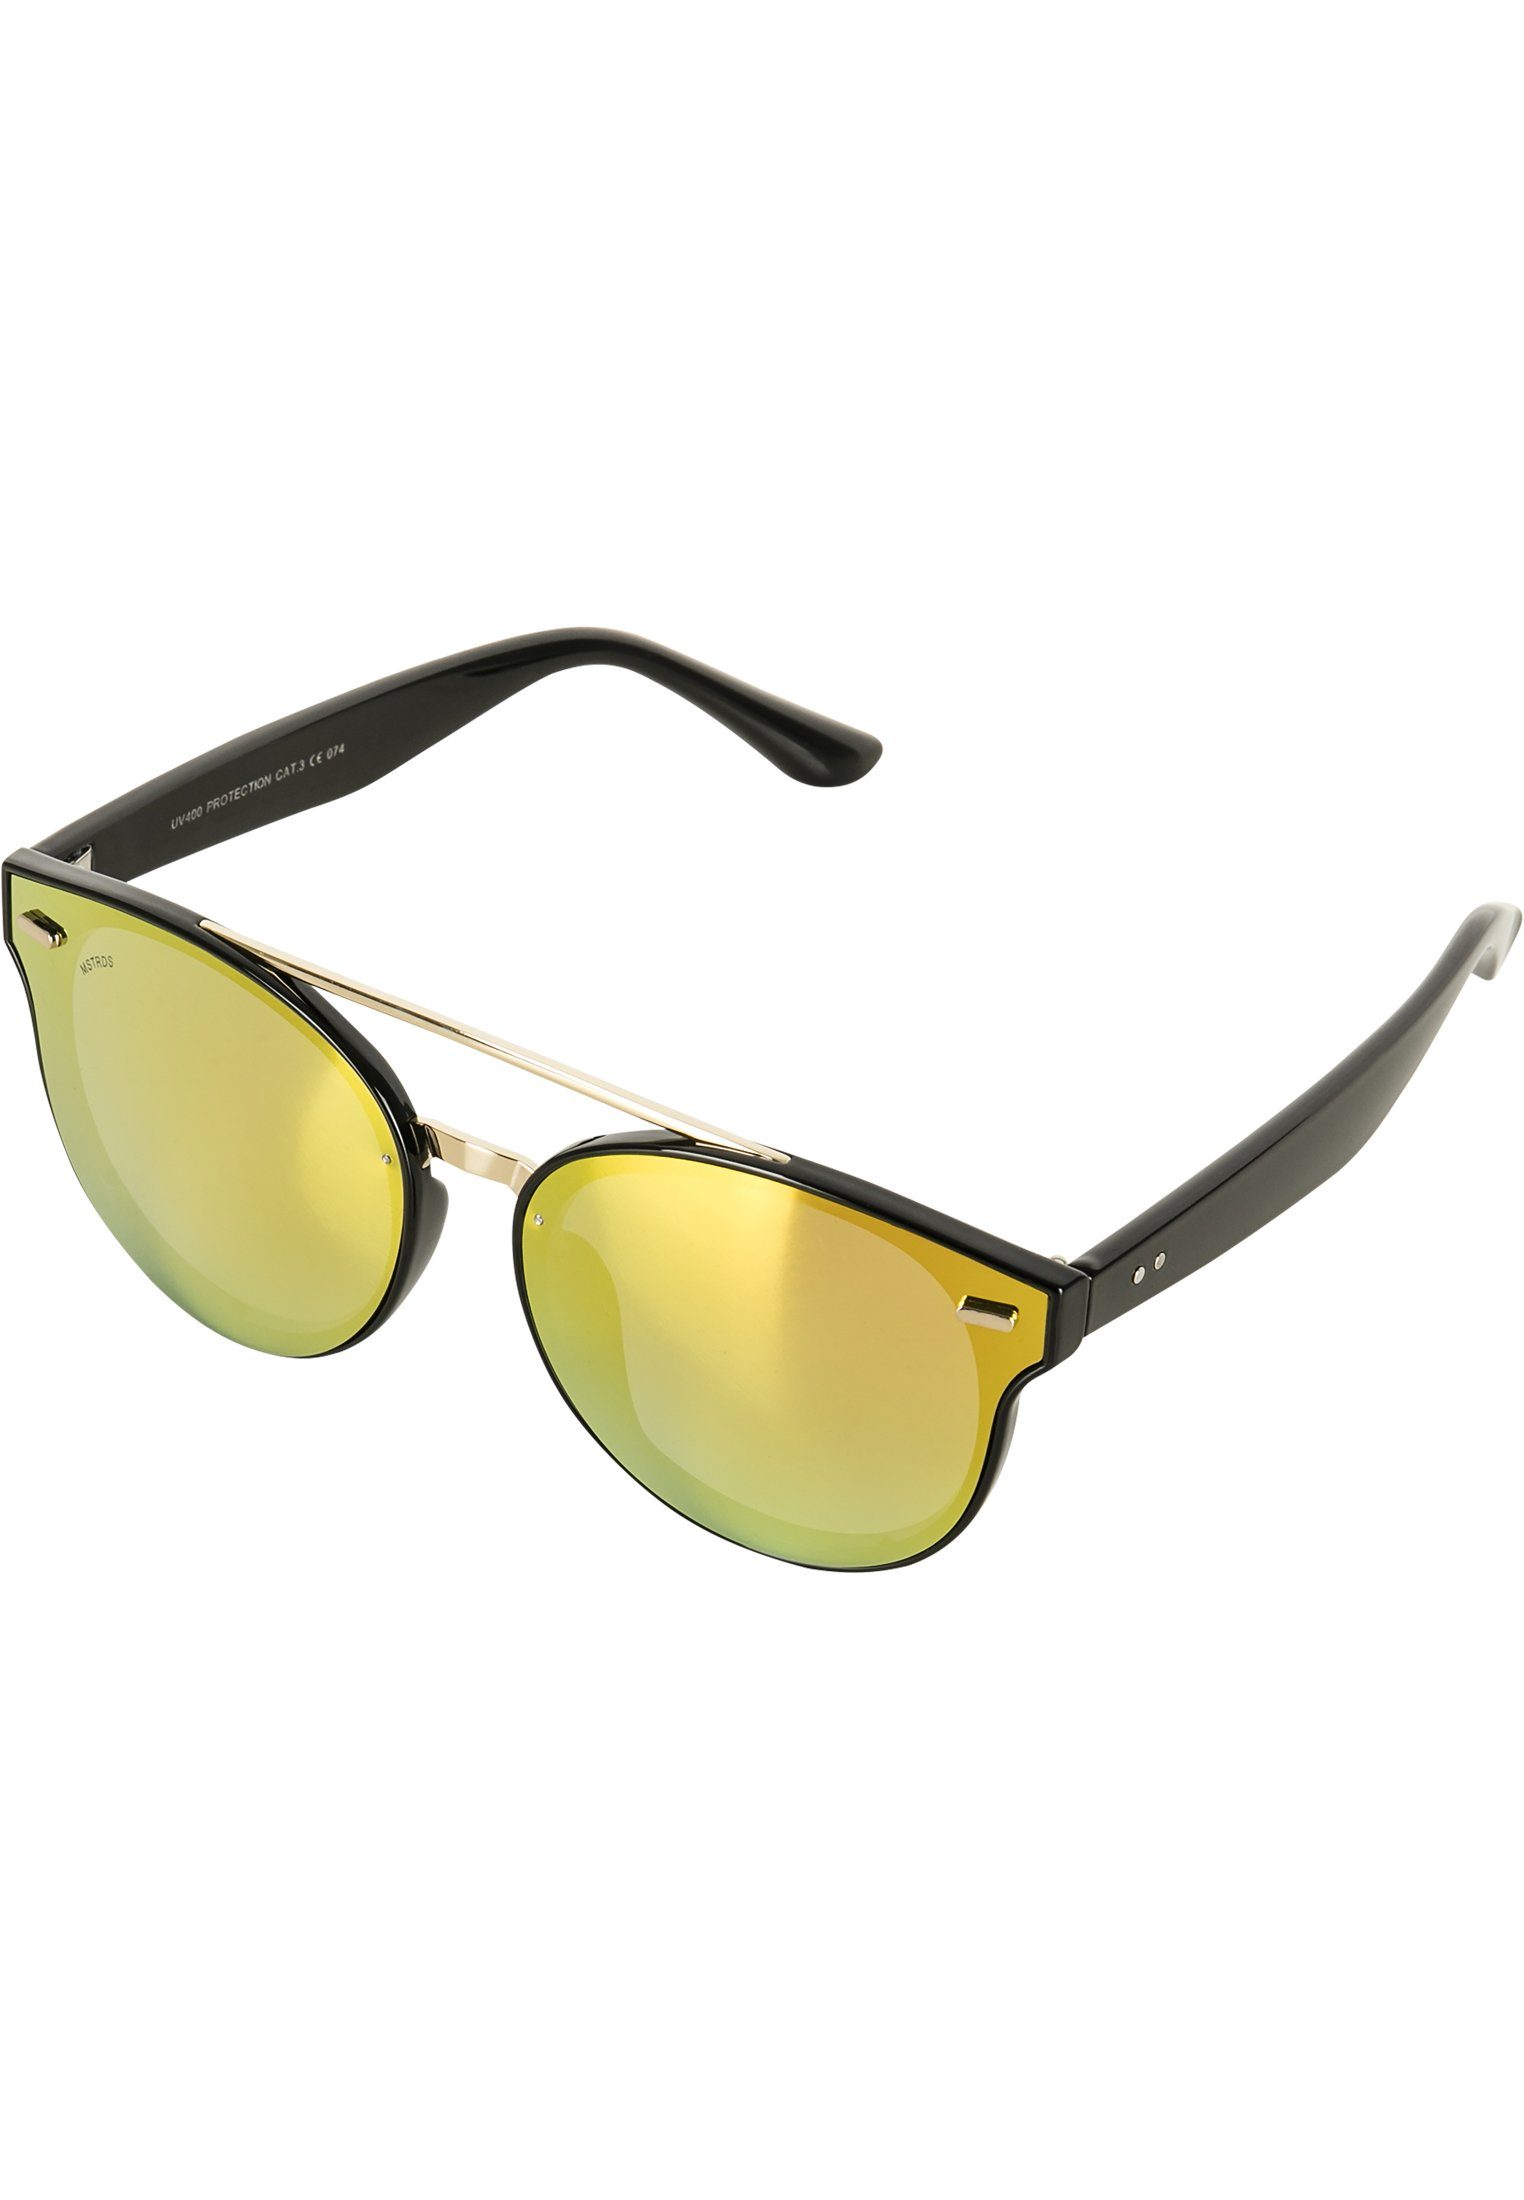 Sunglasses Accessoires June MSTRDS Sonnenbrille